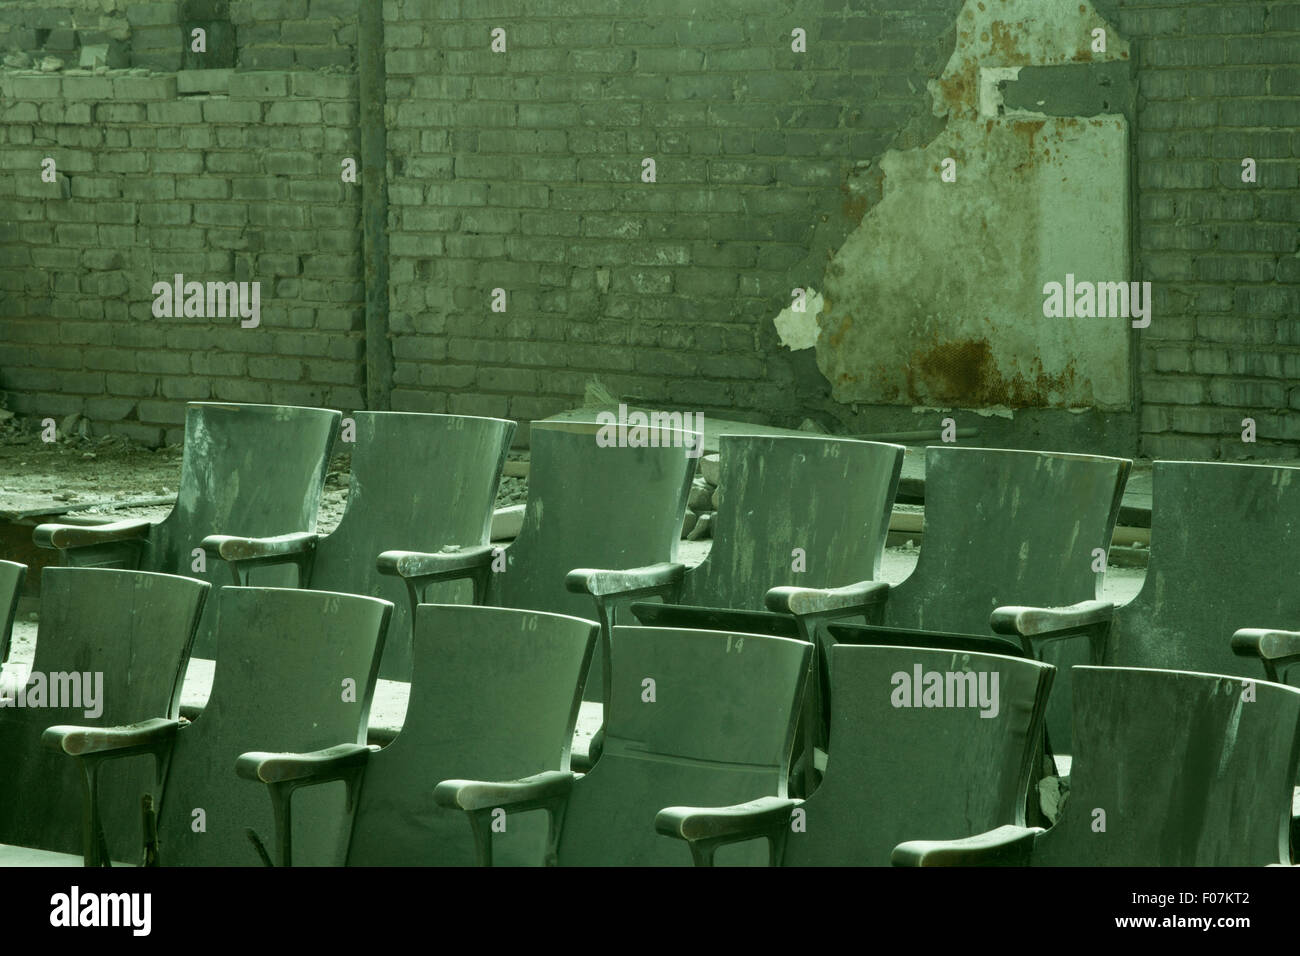 Auditorium sedi nella scuola abbandonata. Foto Stock